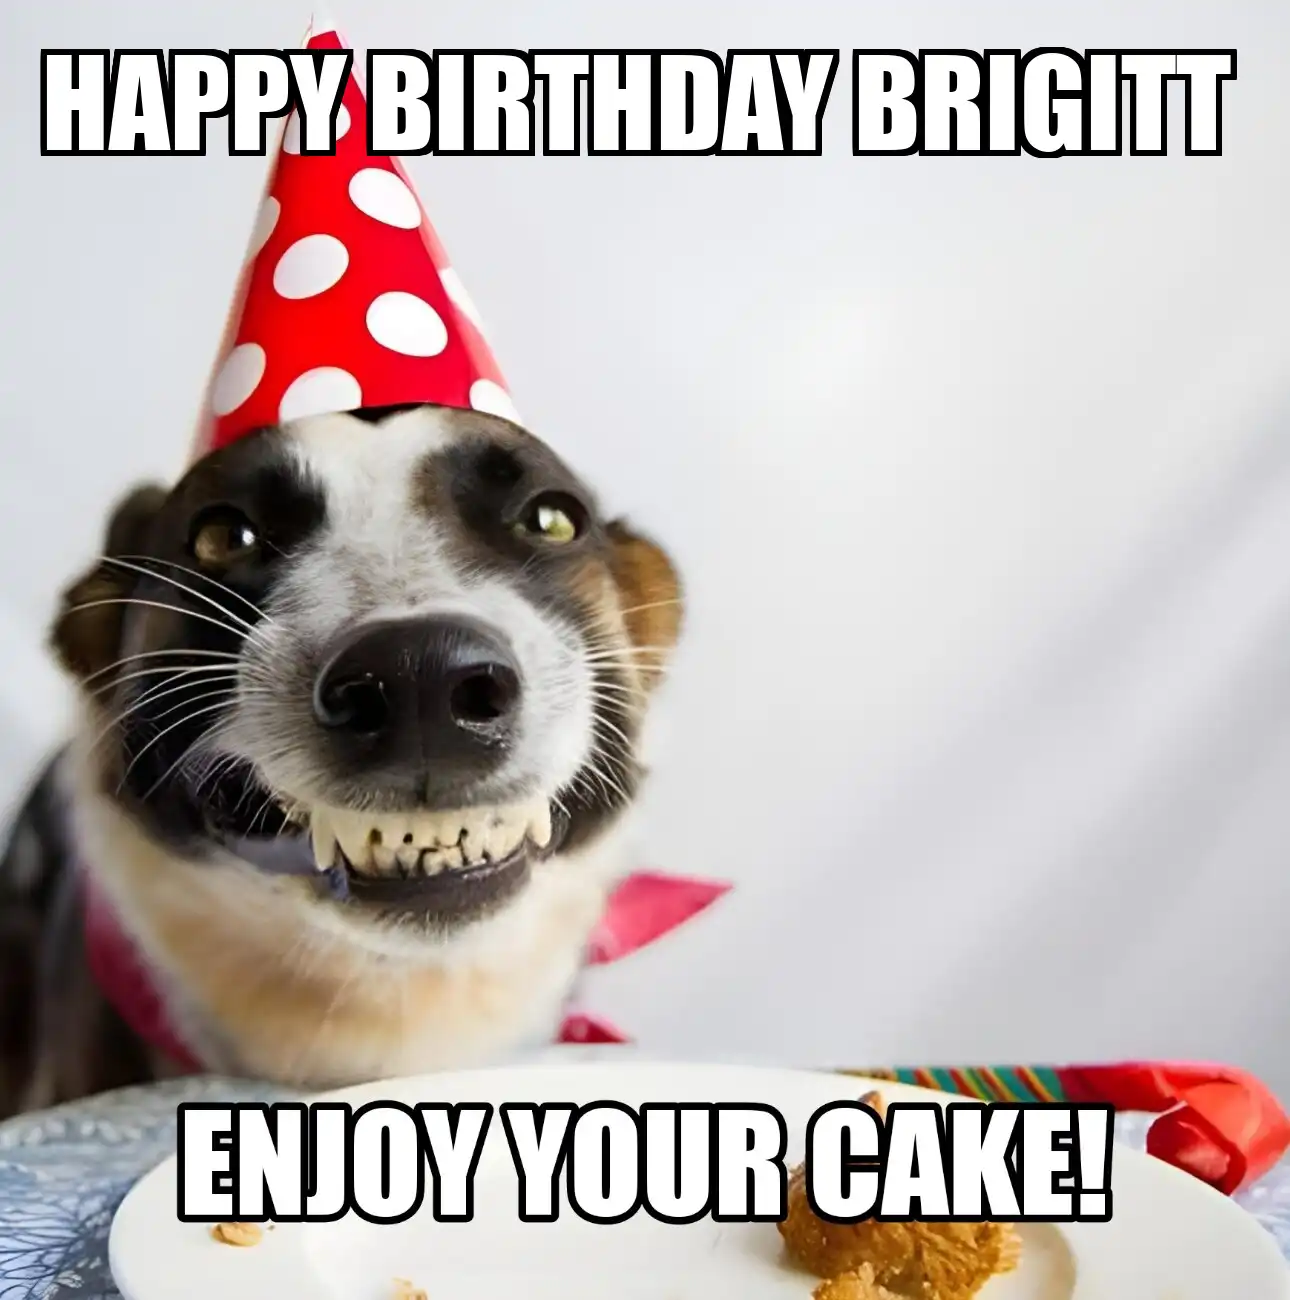 Happy Birthday Brigitt Enjoy Your Cake Dog Meme